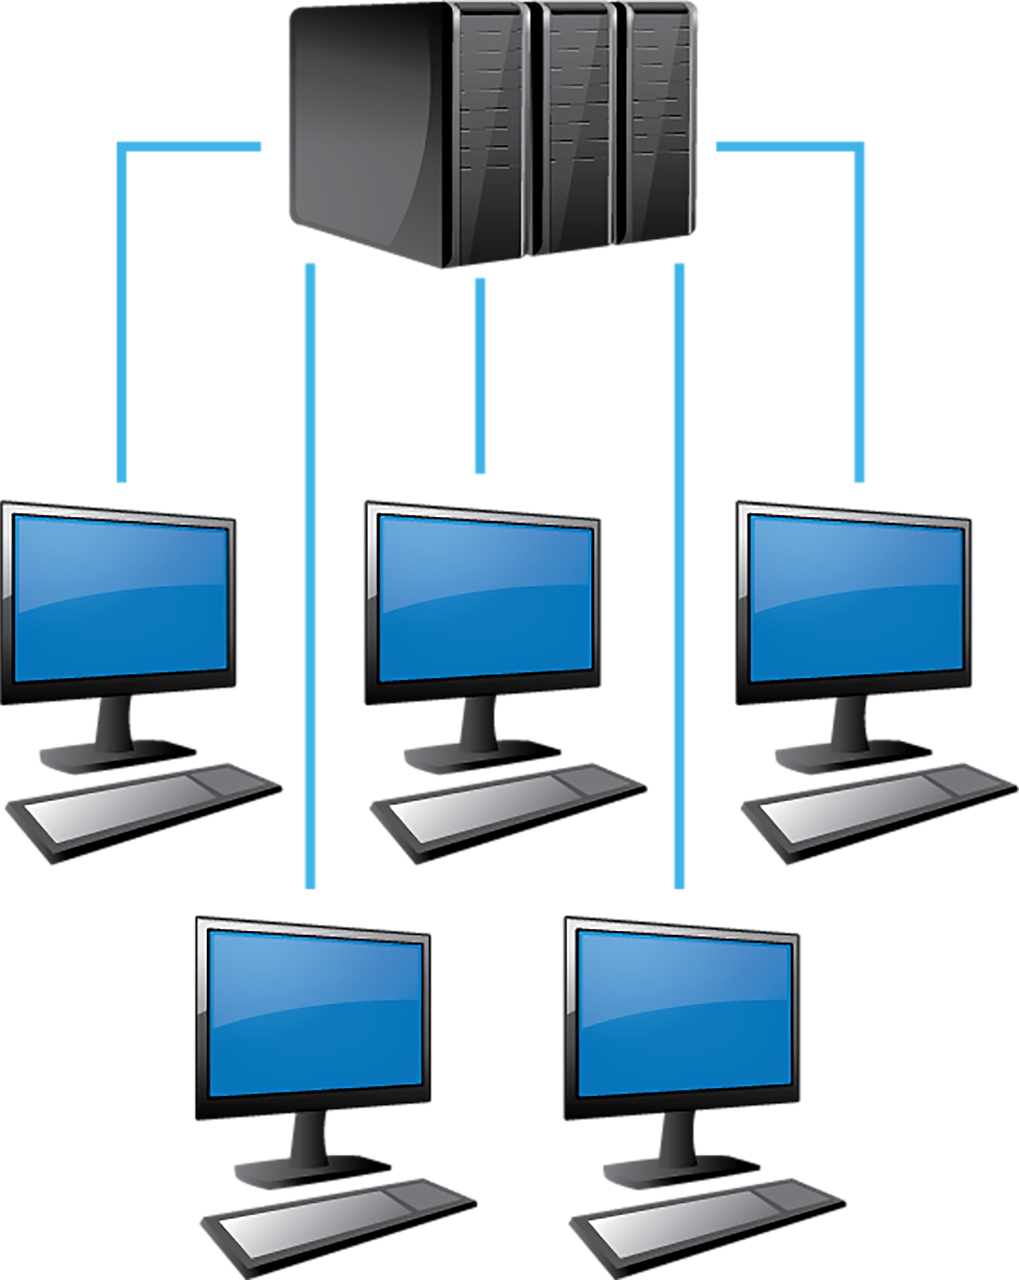 Servidores Windows e Linux de Dados com Backup Automático e de controle de conteúdo e acesso a internet